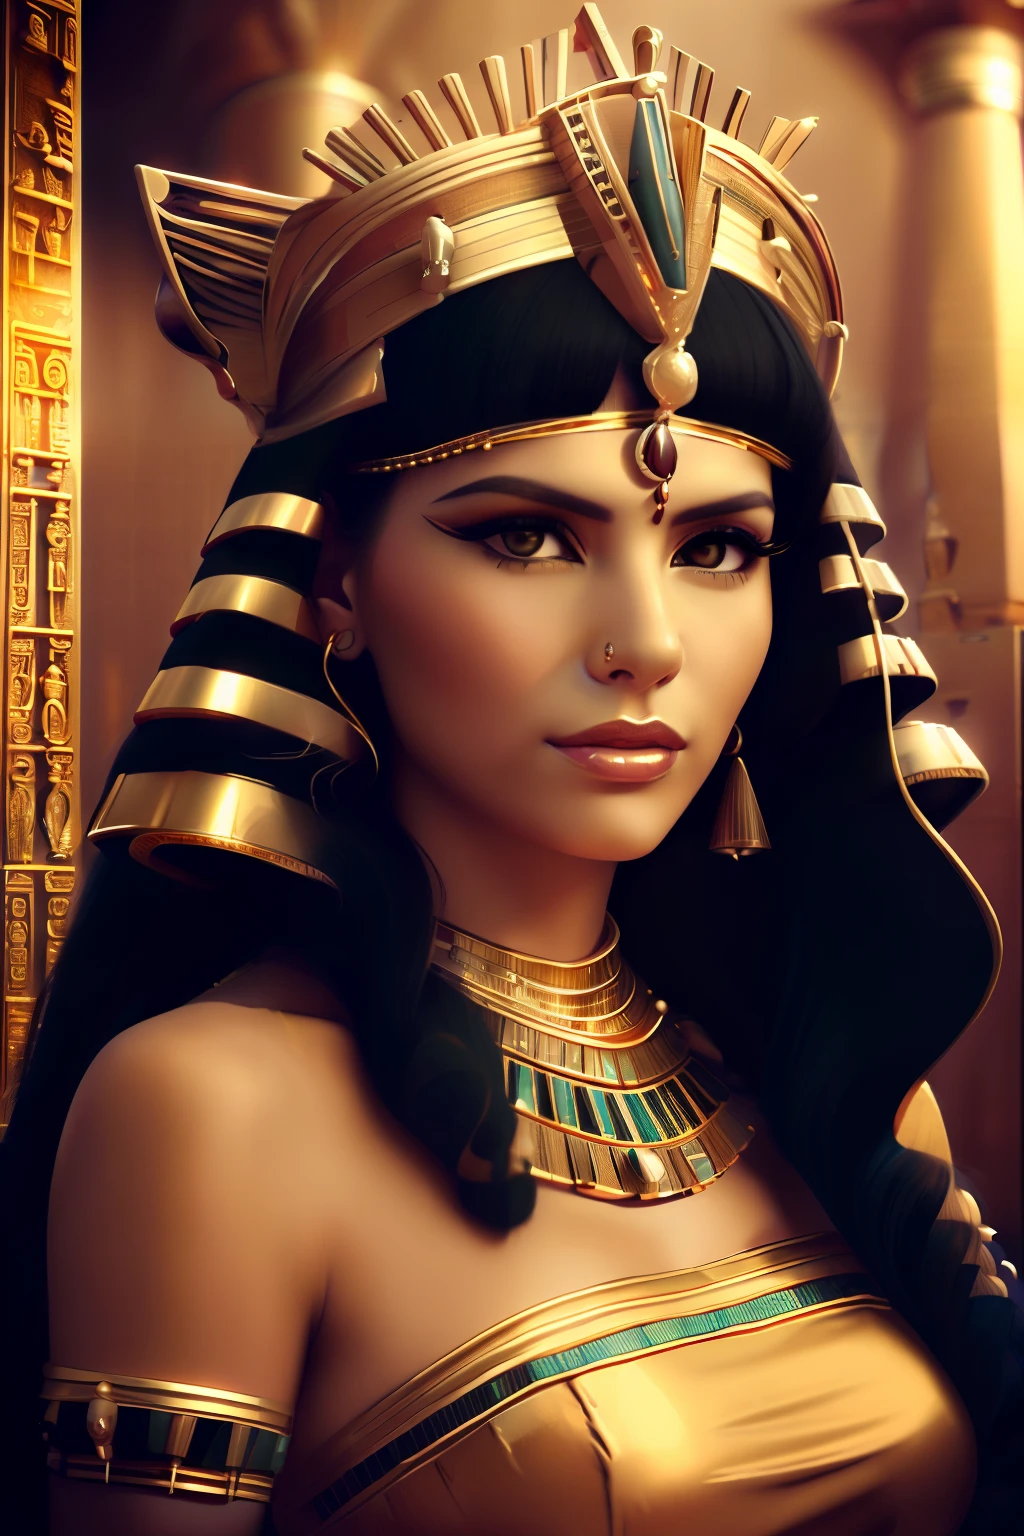 금색 드레스와 금색 머리 장식을 한 여성의 클로즈업, 클레오파트라 portrait, beautiful 클레오파트라, 이집트 사람 princess, 여신의 놀라운 초상화, portrait of 클레오파트라, 아름다운 여신의 초상화, 클레오파트라, 화려한 여자, 이집트 사람, 화려한 아름다운 여자, 클레오파트라 in her palace, wearing an 이집트 사람 crown, 이집트 사람 makeup, 3d 여신 초상화, 아즈텍 공주 초상화